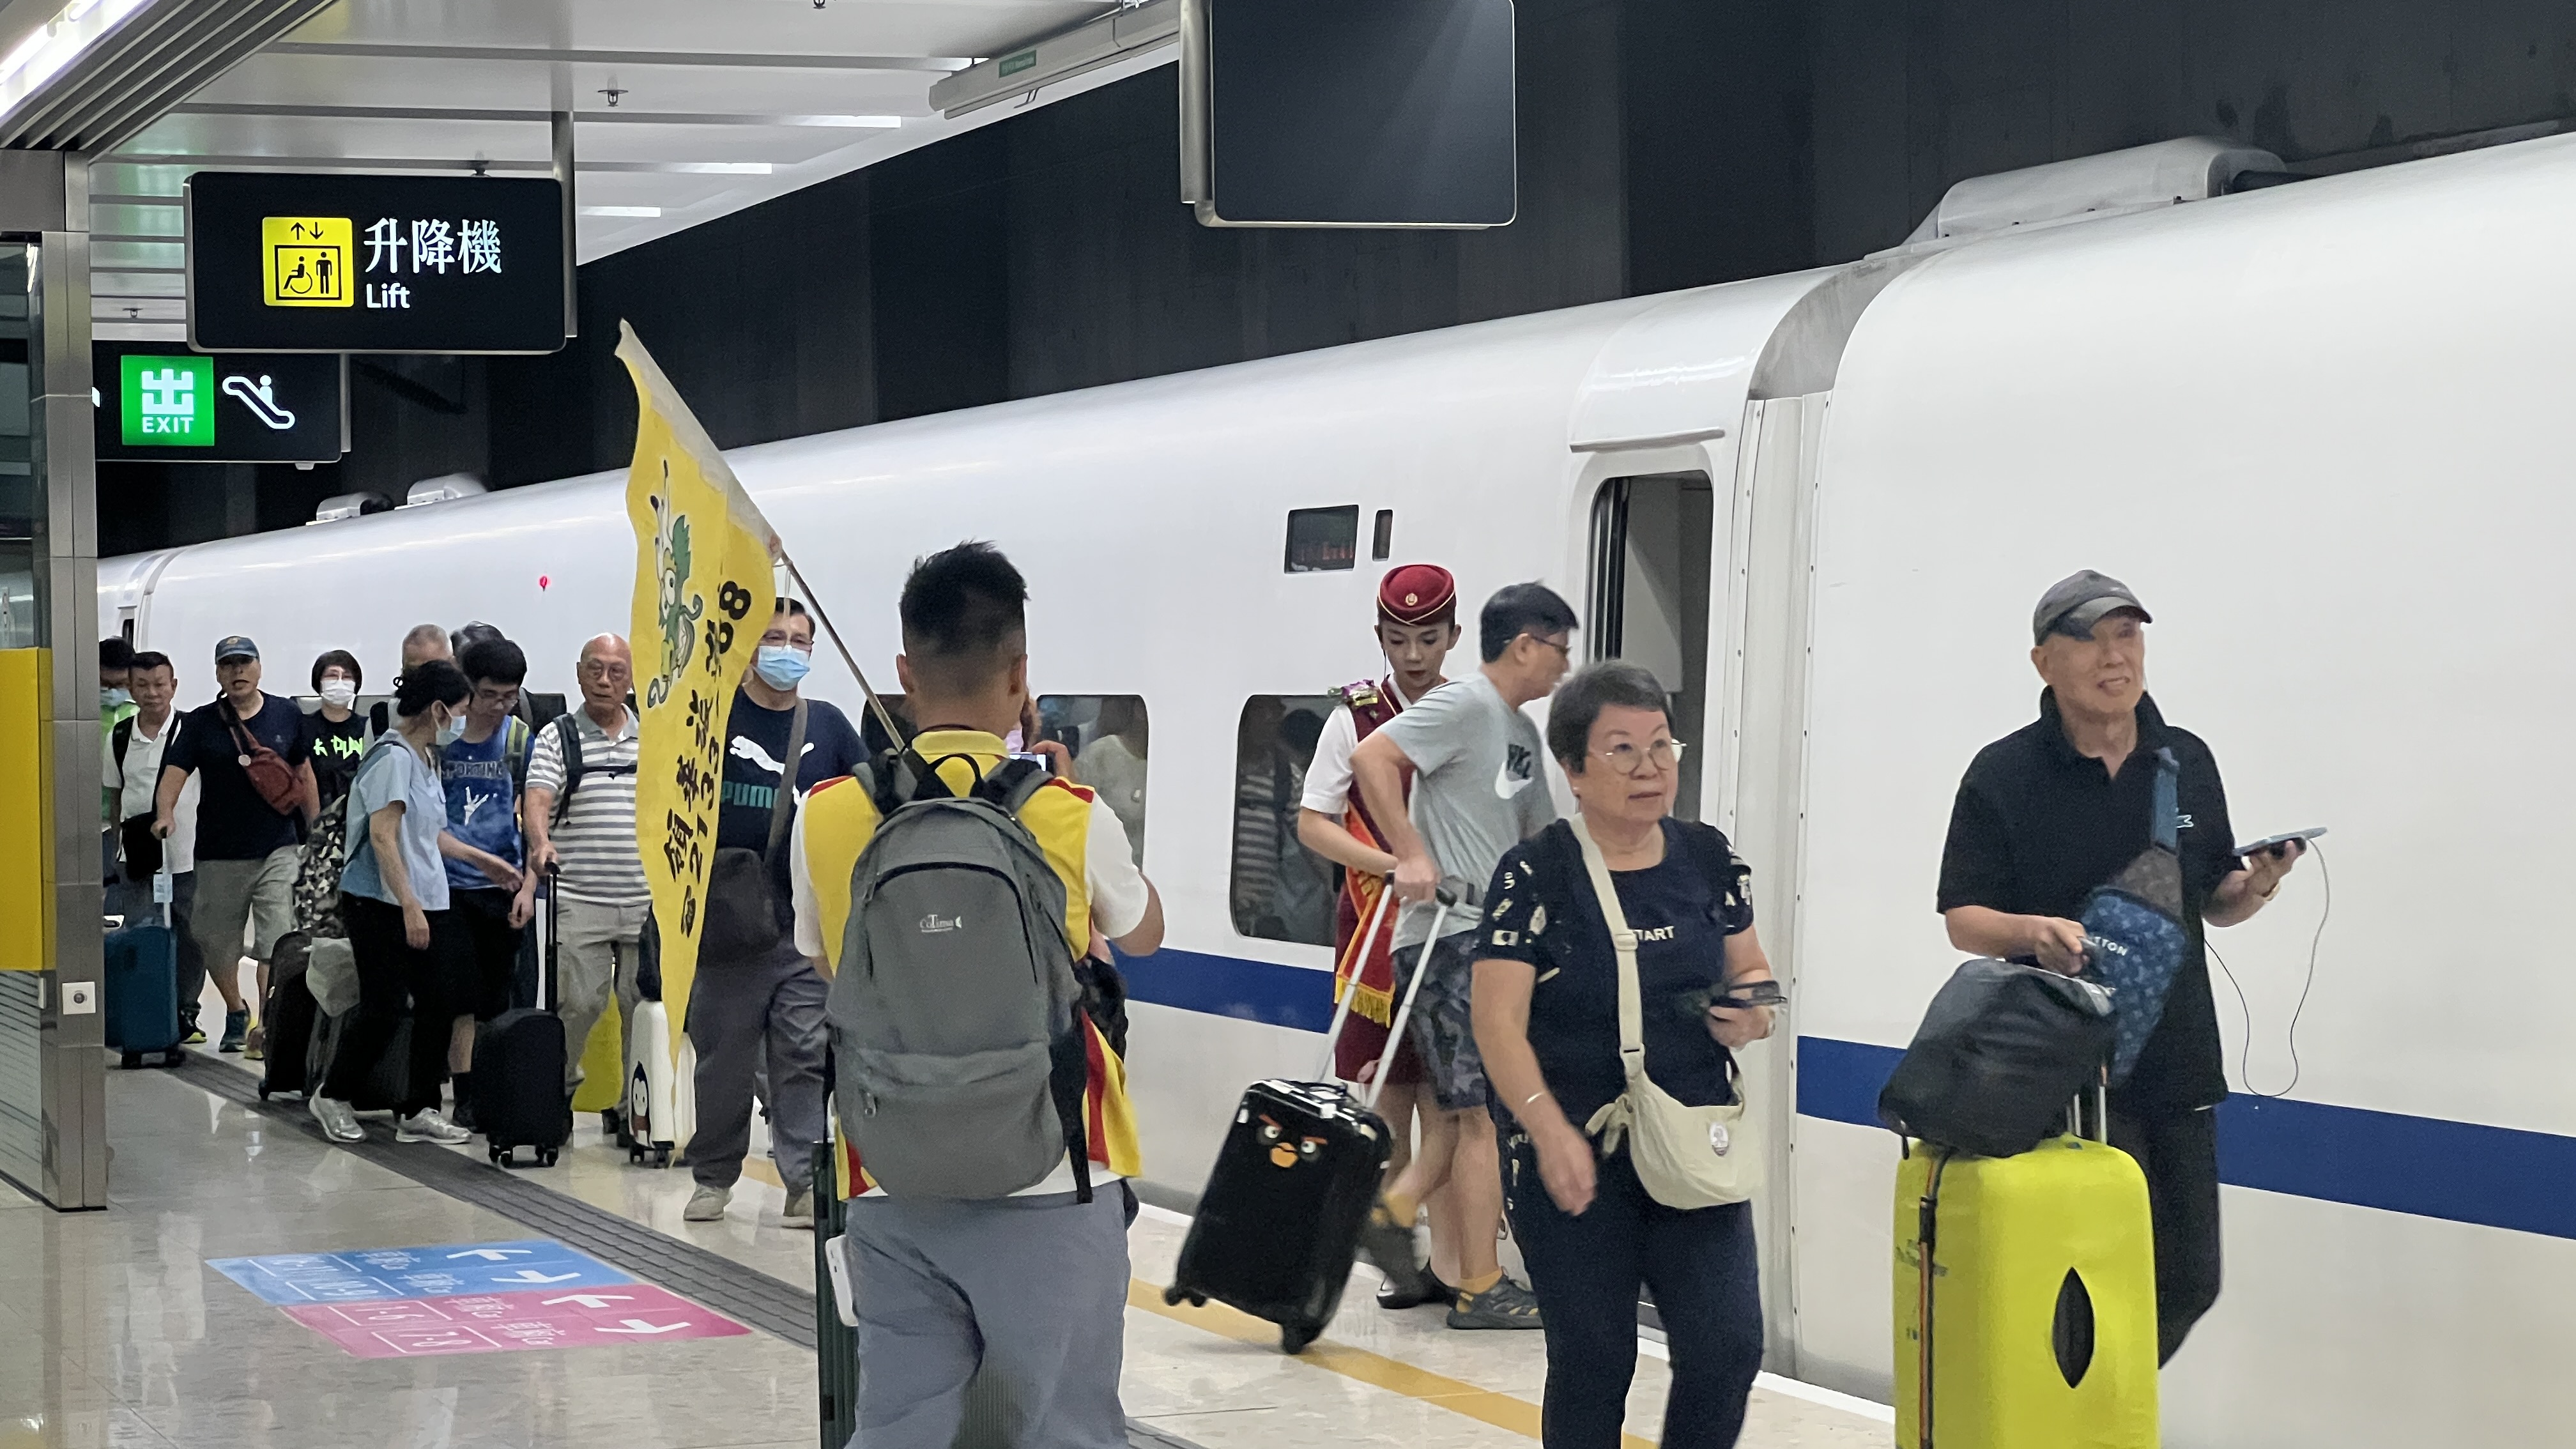 圖集 | 香港—北京首班動臥列車開出